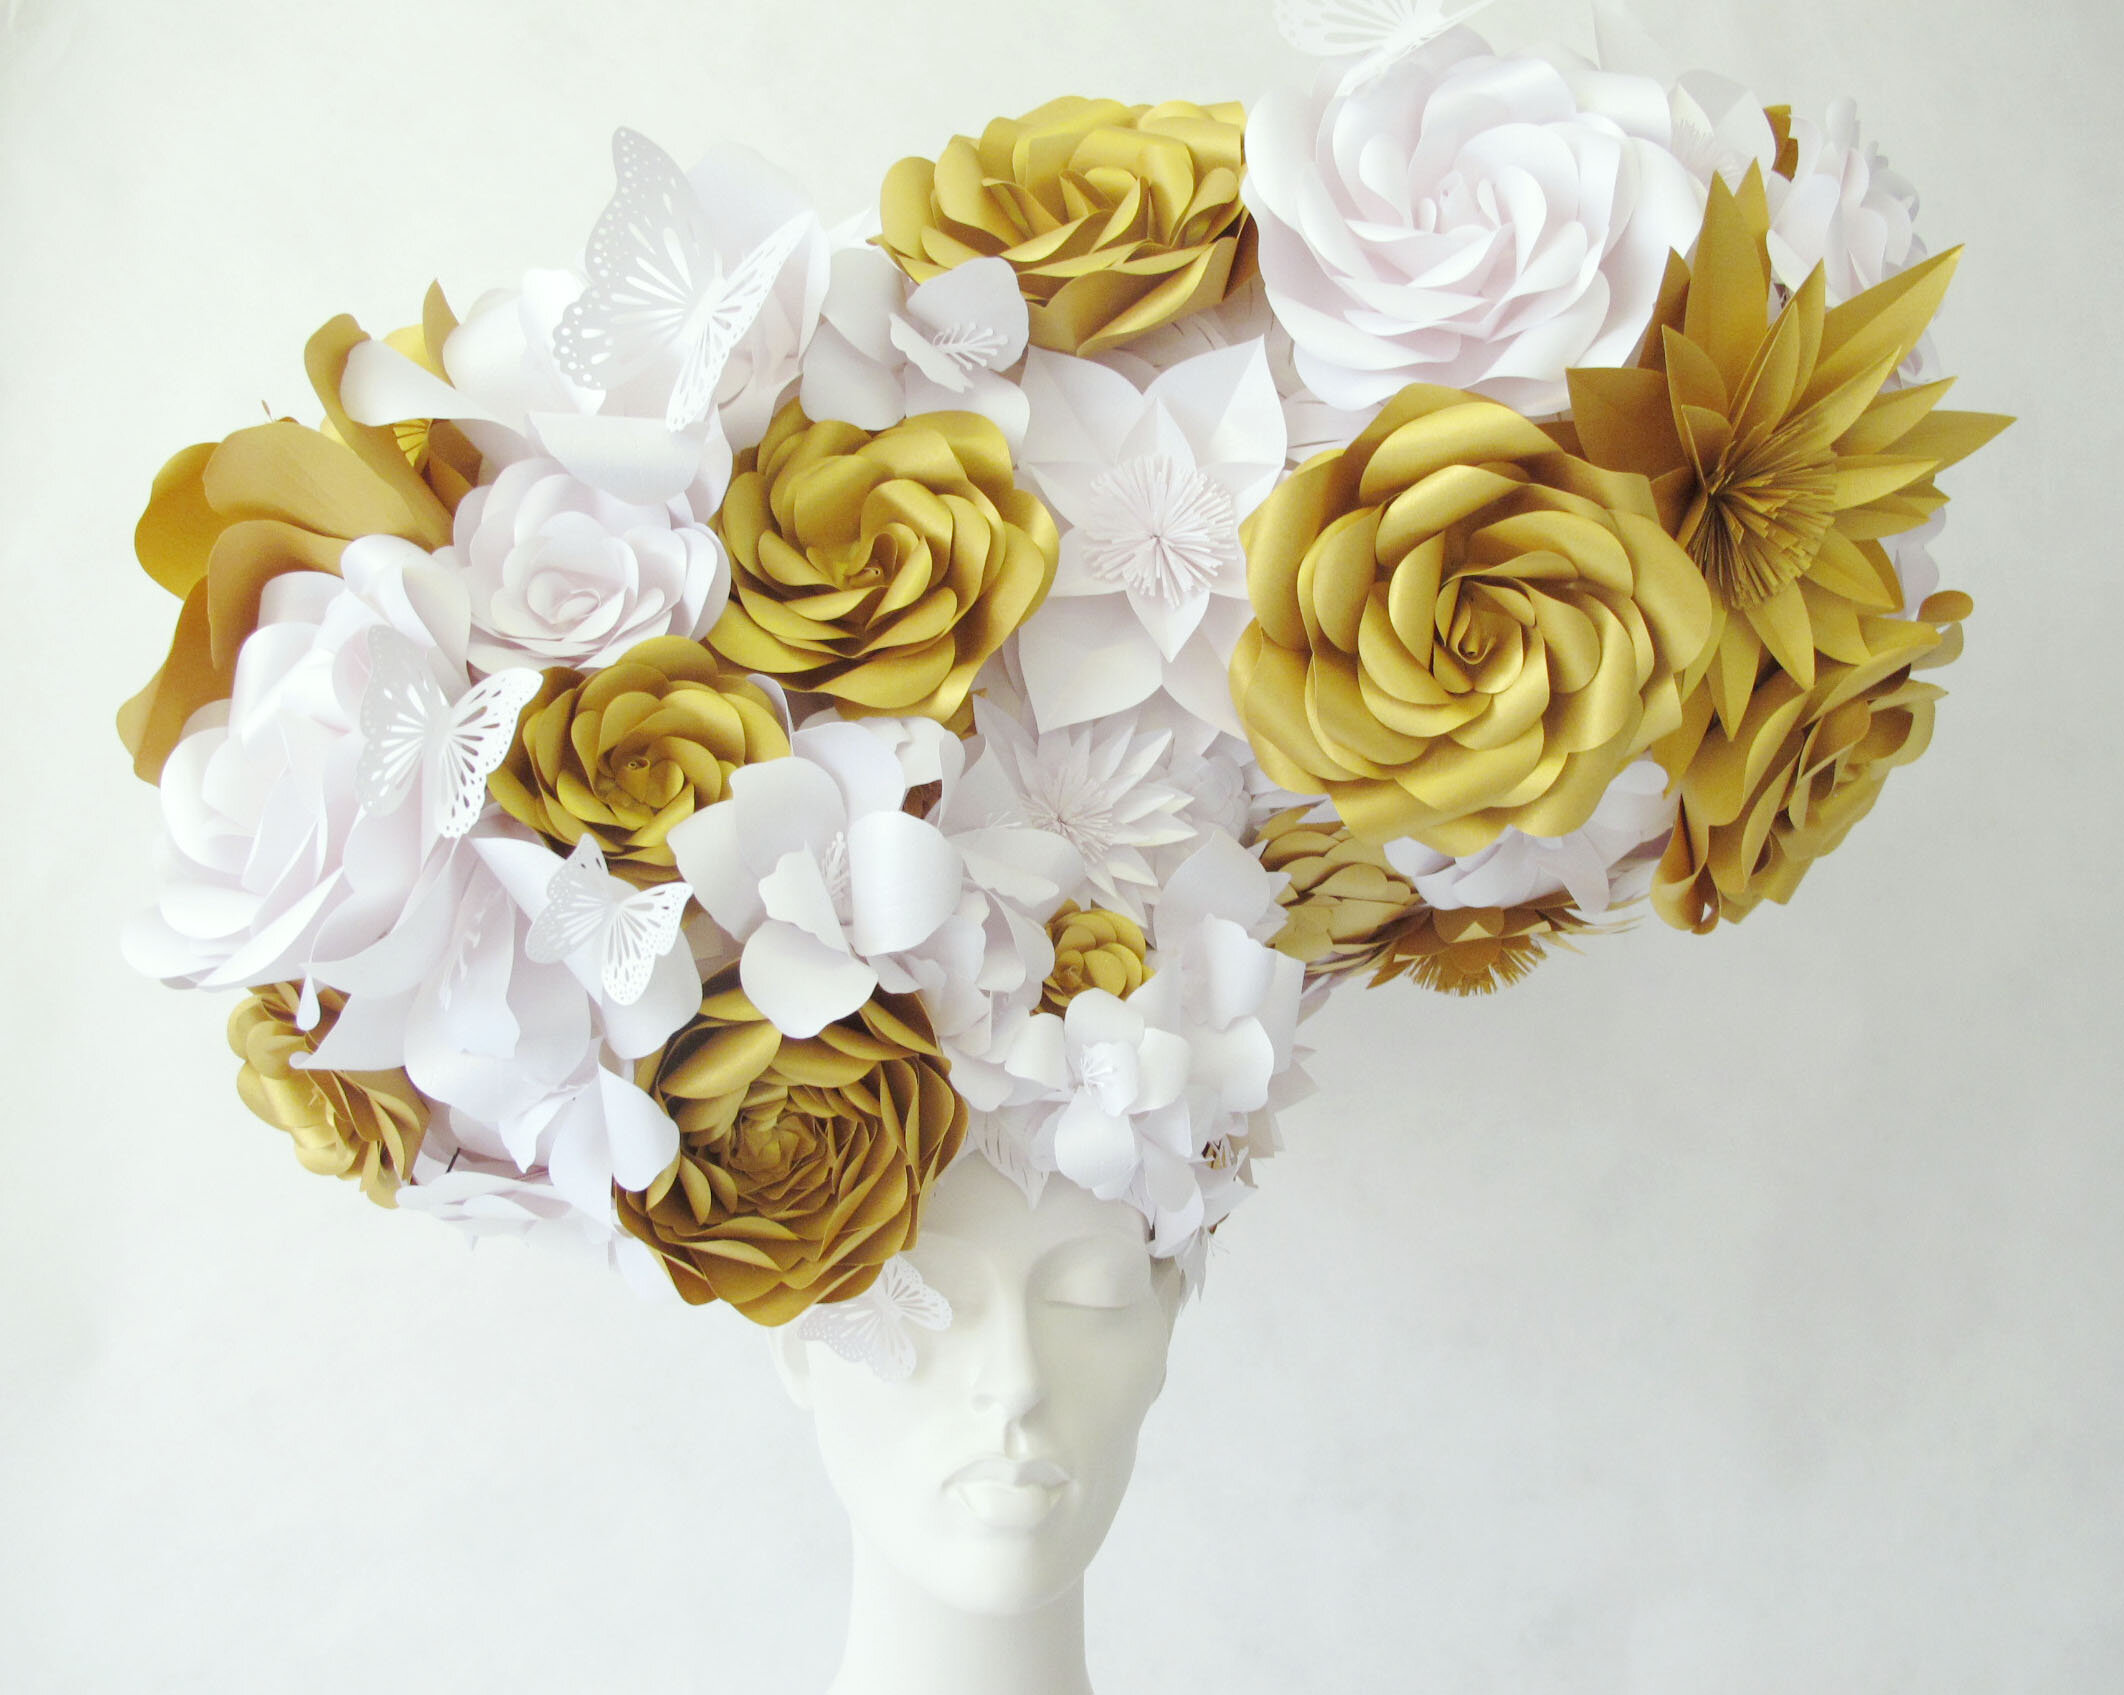 themill-headpiece-paper-flowers-zoe-bradley-paperart-flowers-3.jpg